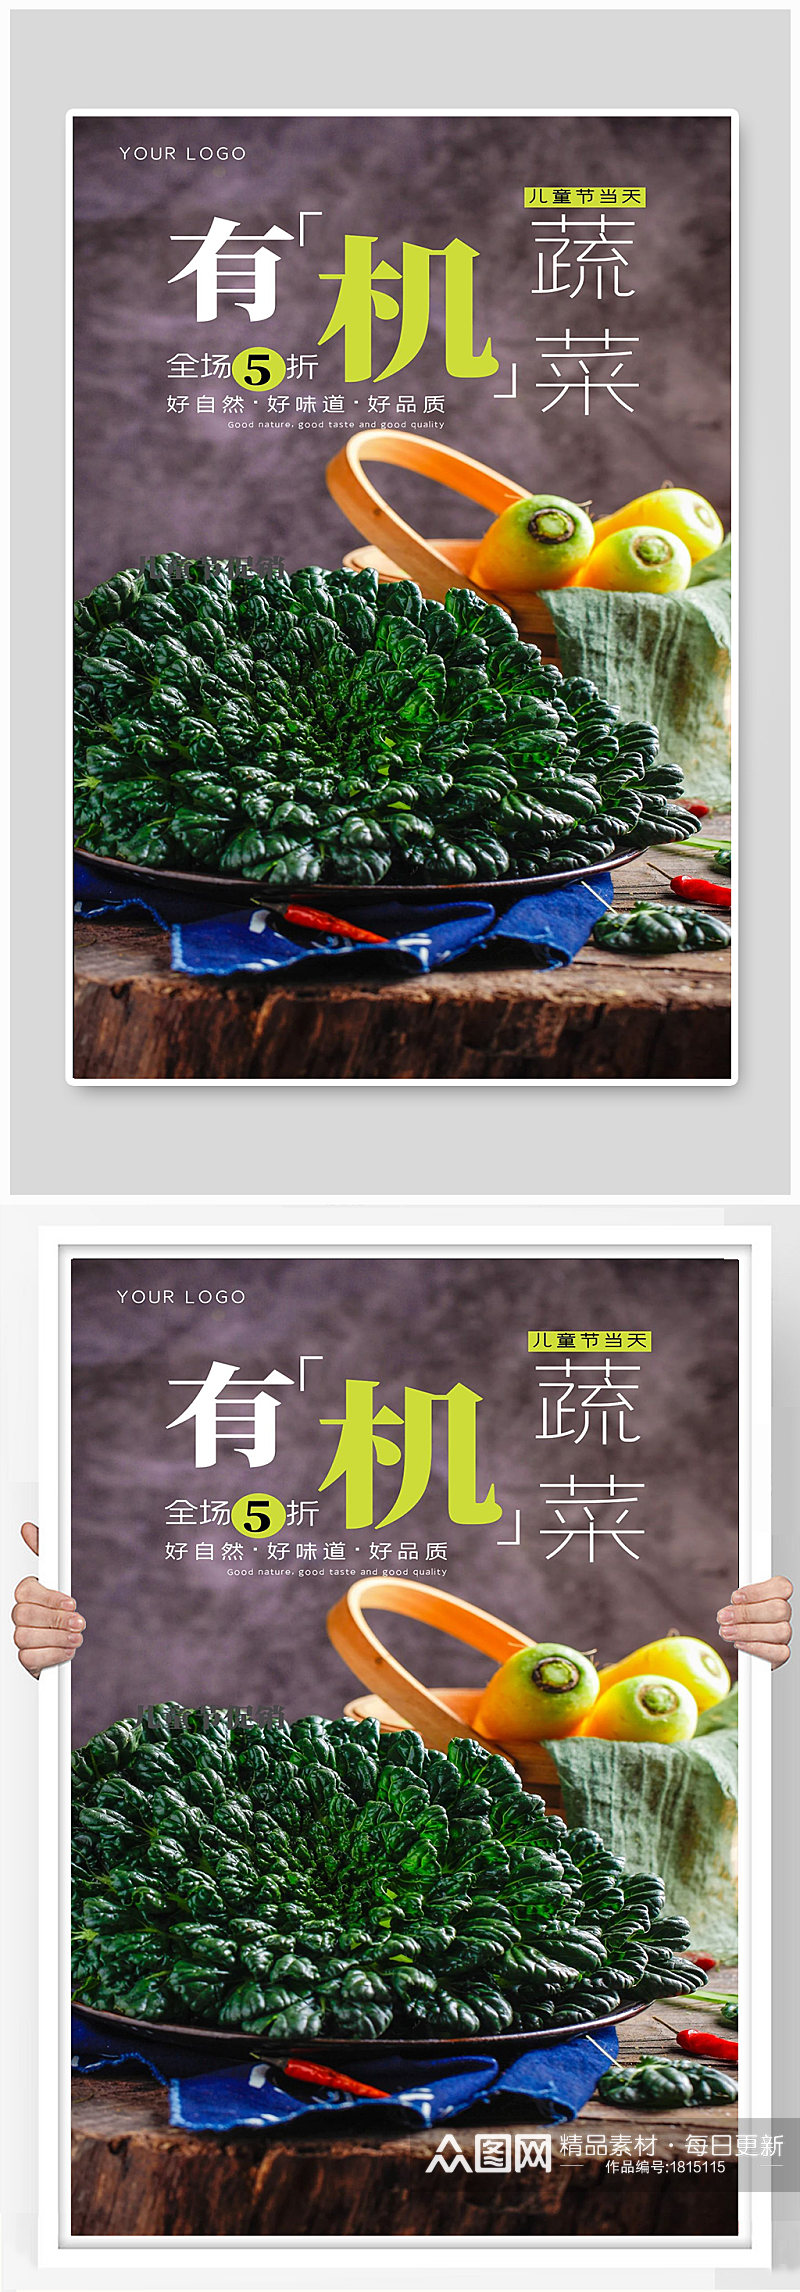 绿色有机蔬菜果蔬宣传海报素材